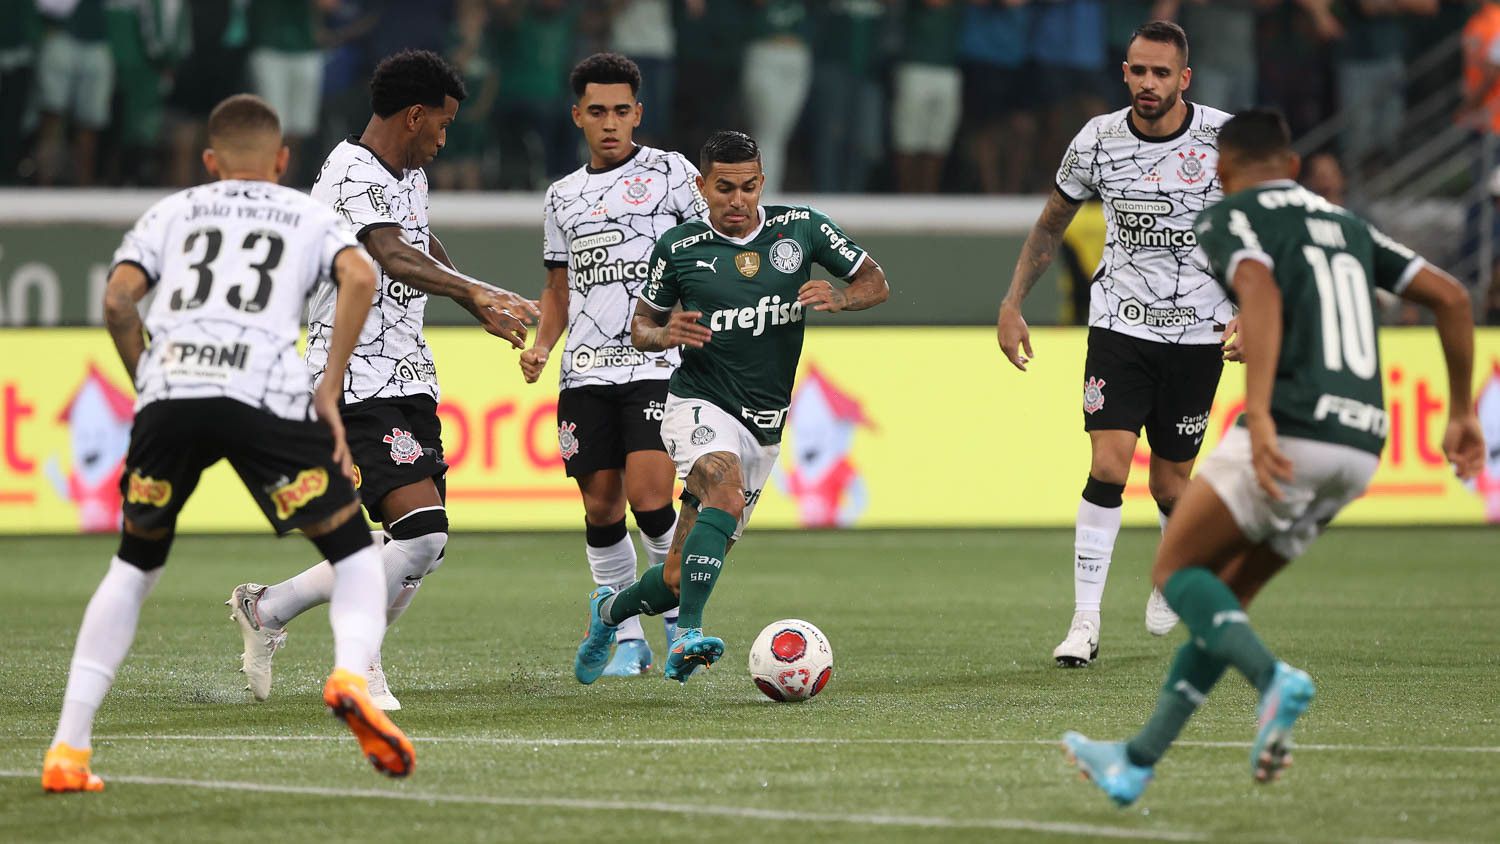 Palmeiras x Goiás ao vivo: como assistir online e transmissão na TV do jogo  do Brasileirão - Portal da Torcida